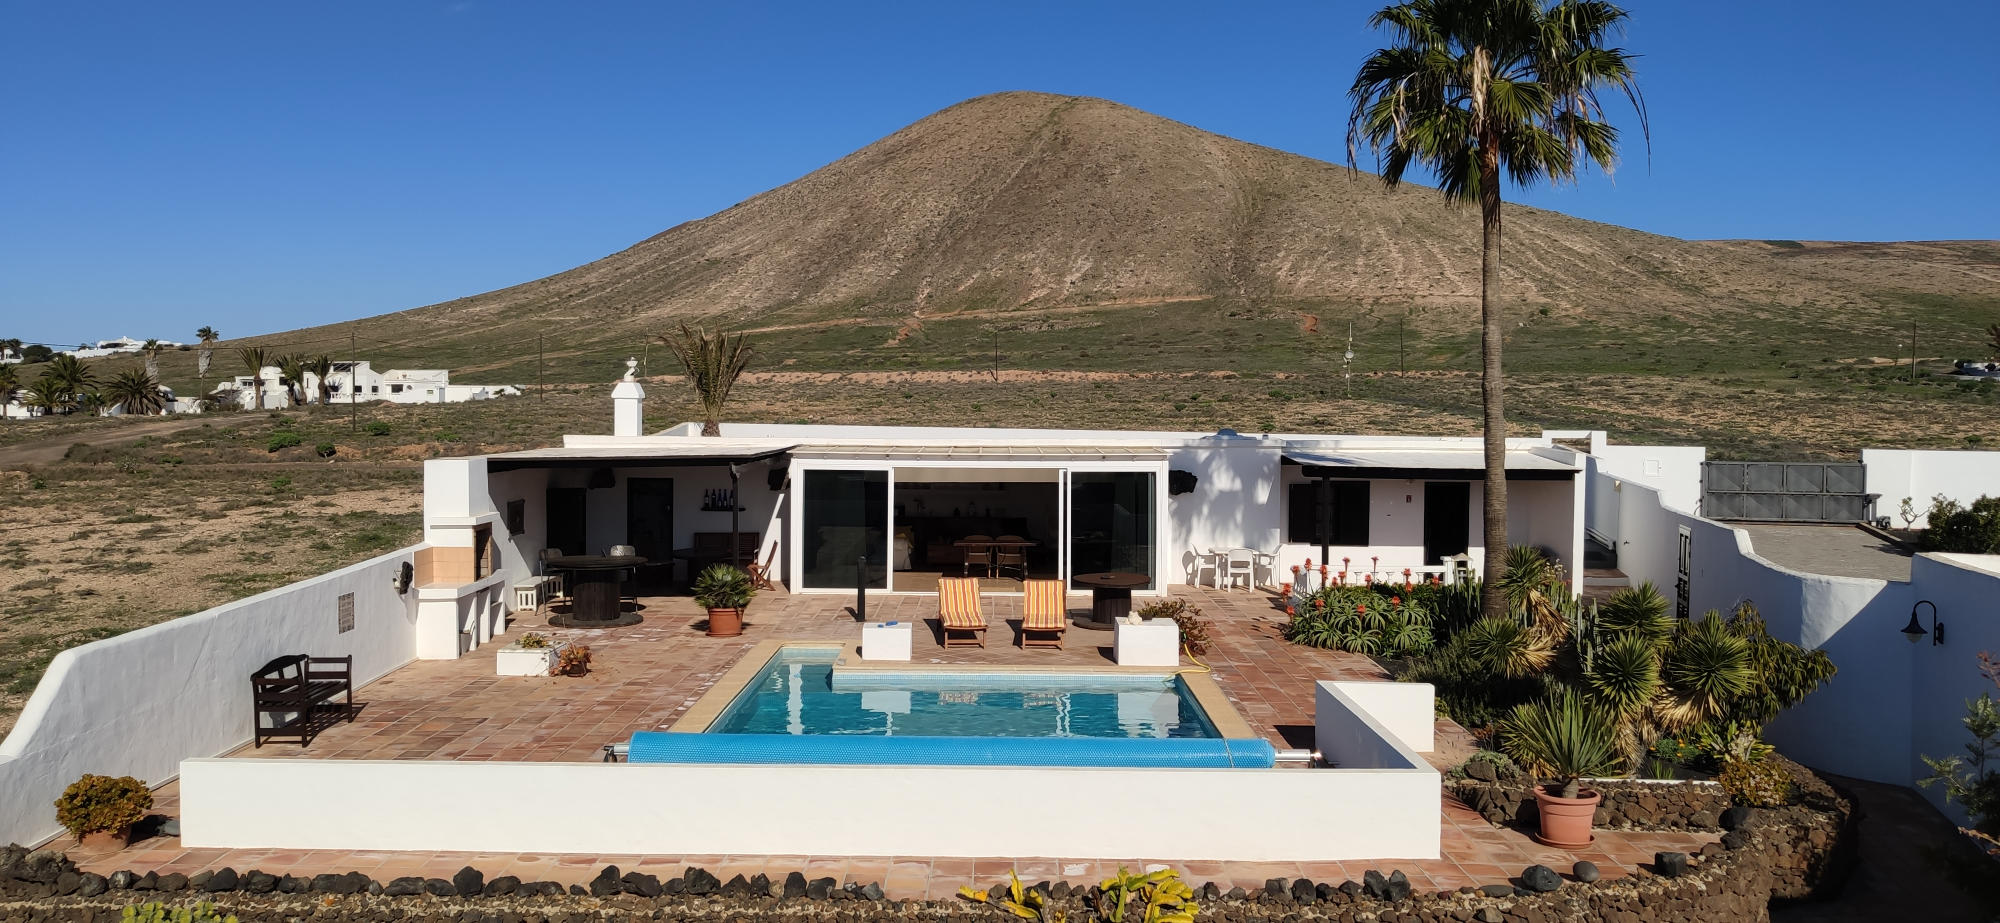 Ferienhaus auf Lanzarote